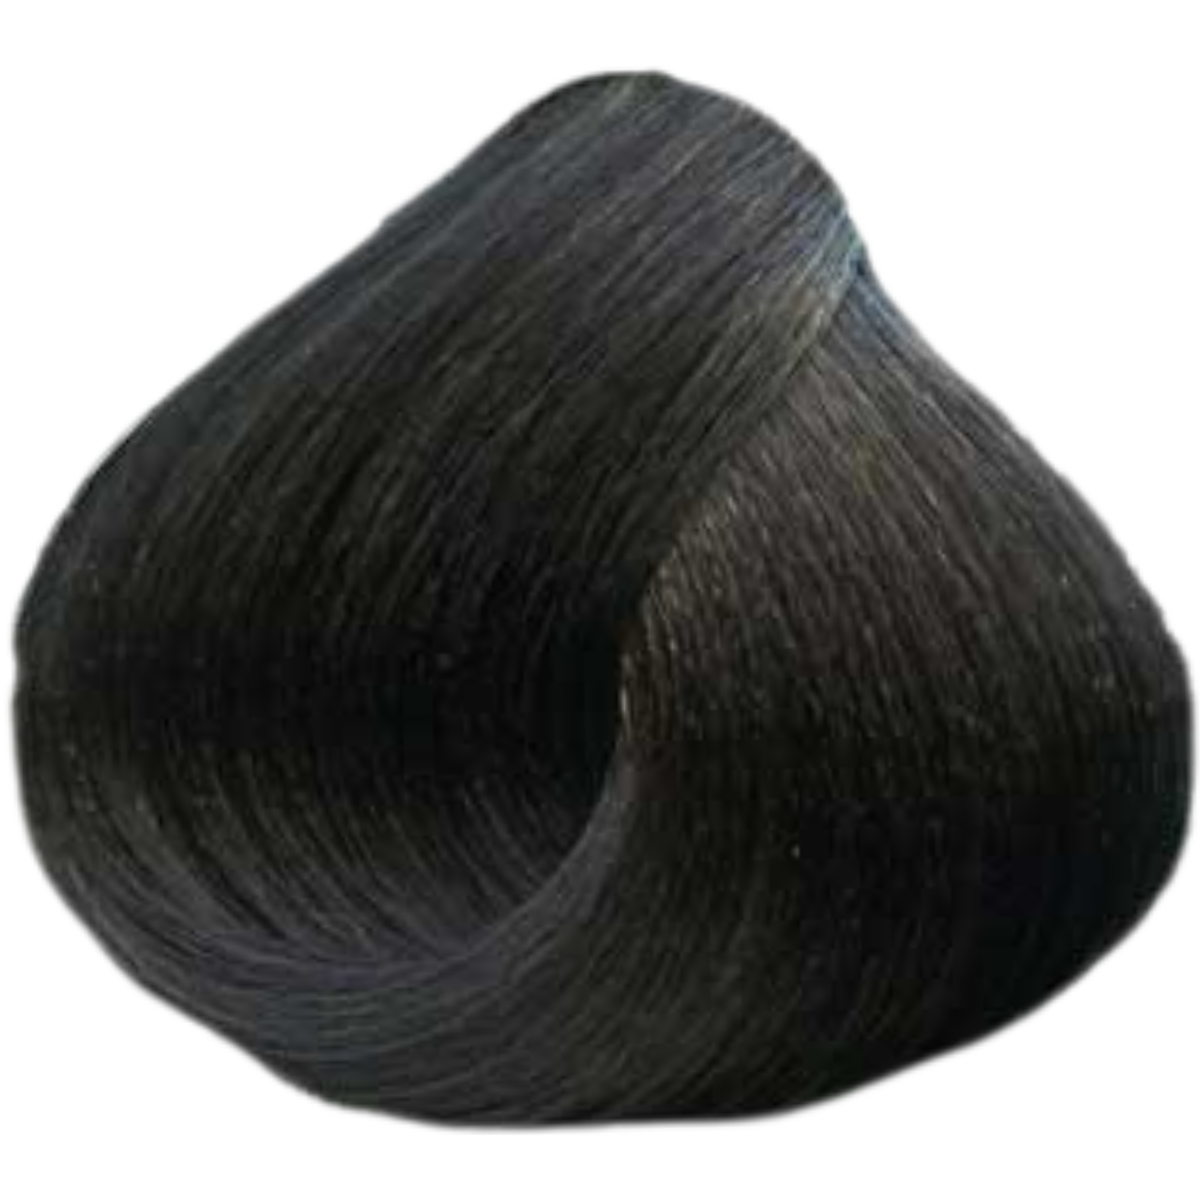 צבע שיער 6.12 DARK ASH IRIDESCENT BLONDE פארמויטה FarmaVita צבע לשיער 100 גרם